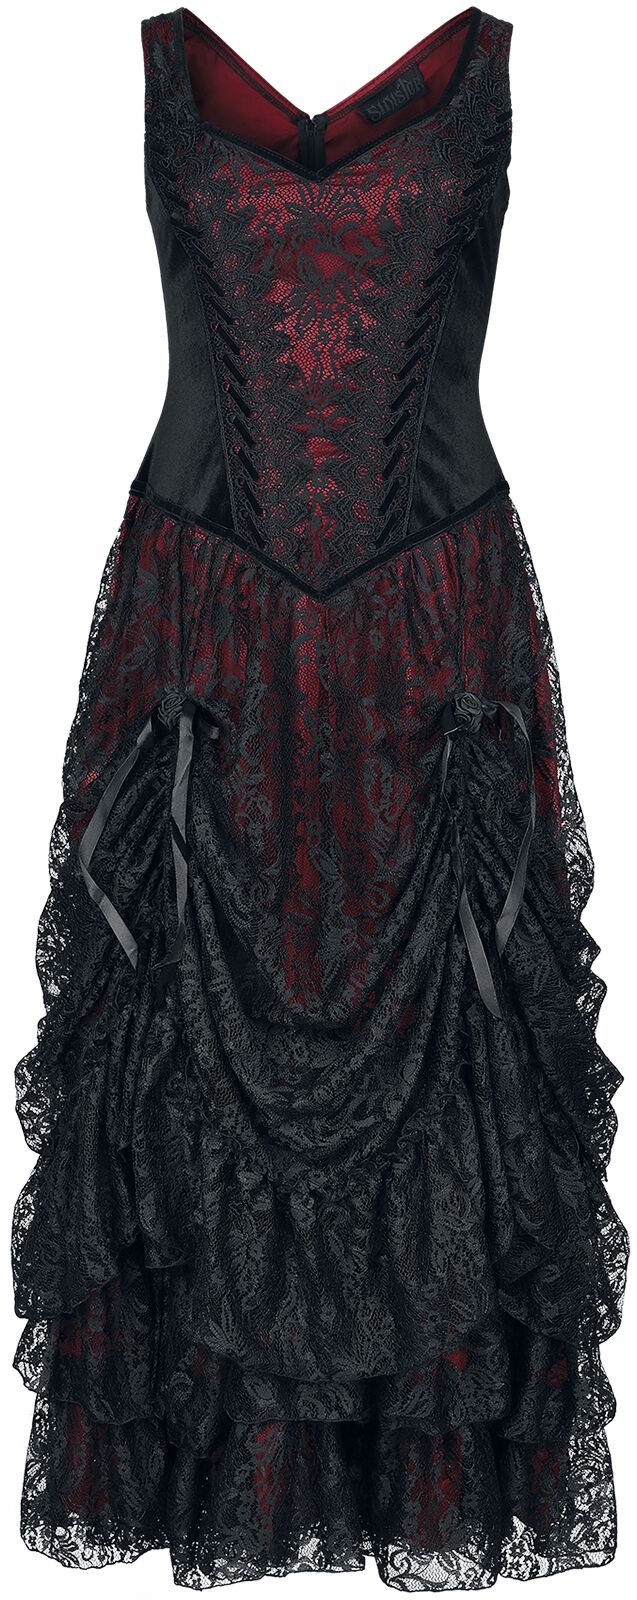 Sinister Gothic - Gothic Kleid lang - Longdress - M bis 4XL - für Damen - Größe XXL - schwarz/rot